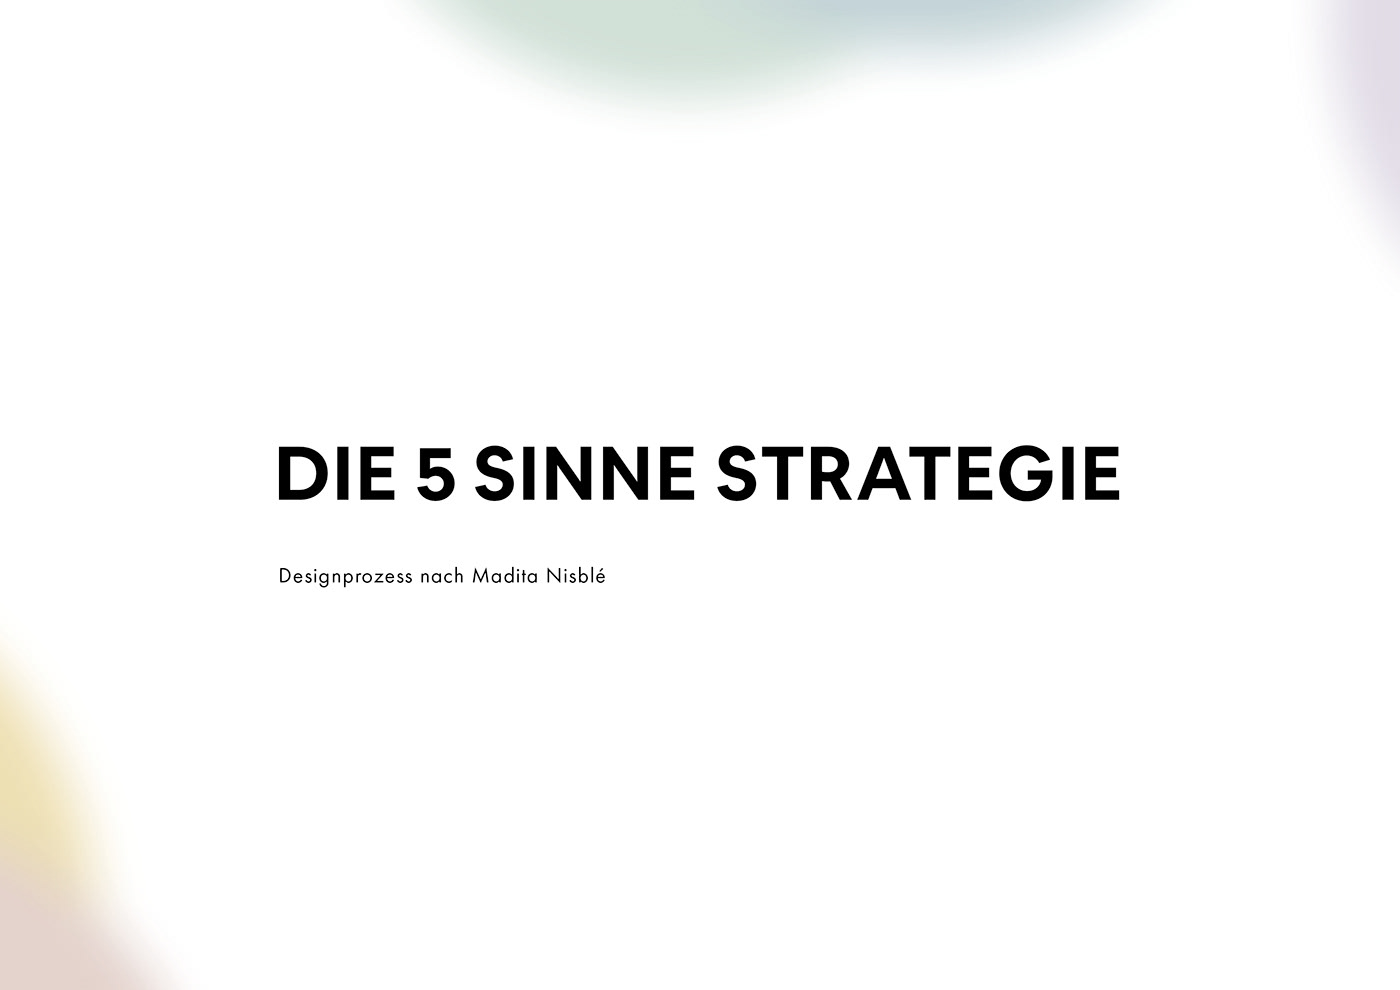 concept designprozess Kampagne Konzept Konzeption Markenentwicklung Produktentwicklung strategie strategy Visualisierung